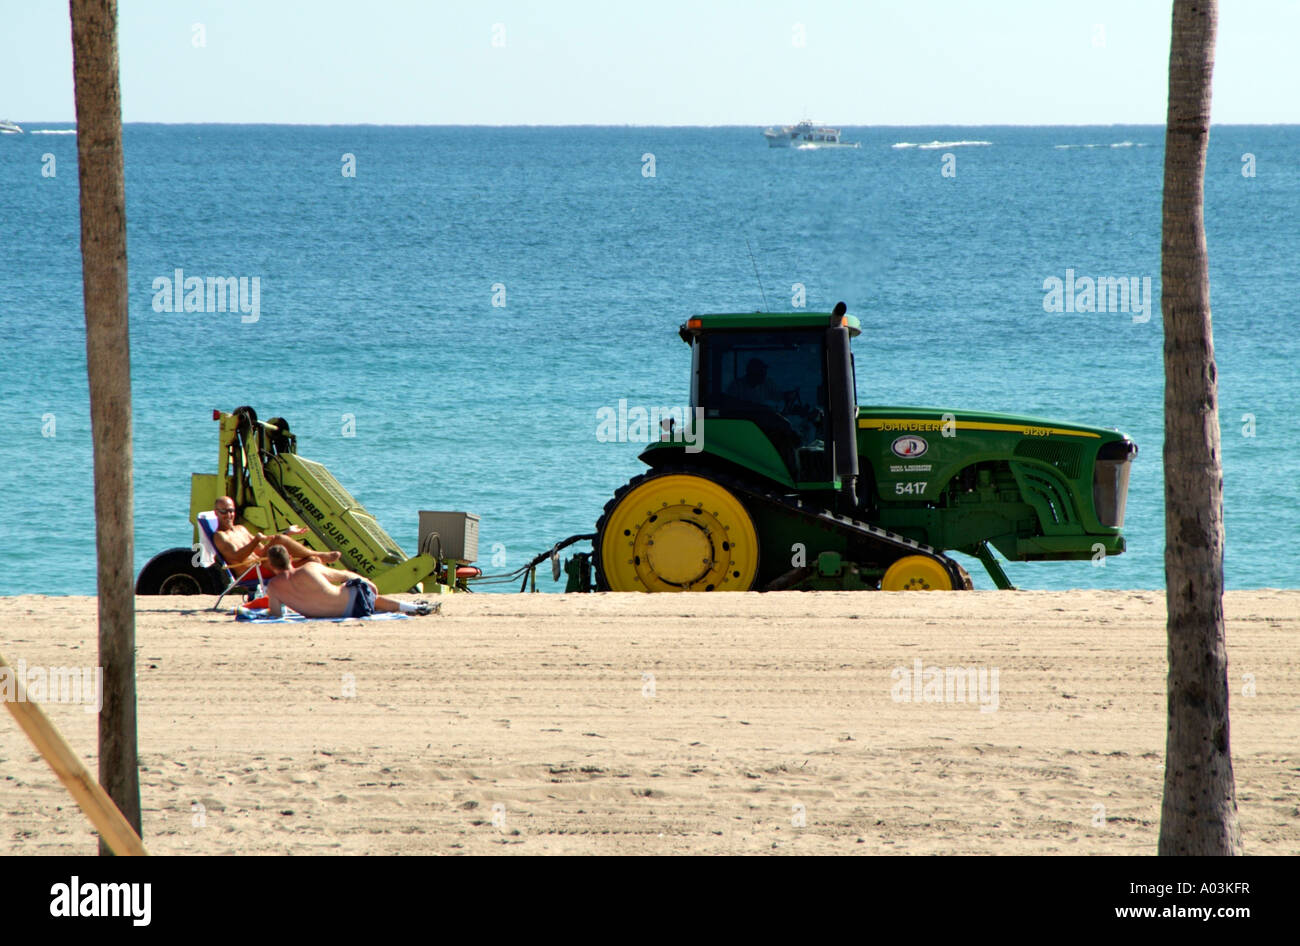 Strand Wartung Traktor Reinigung Küste Fort Lauderdale Florida USA A John Deere Traktor zieht einen Friseur Surf Rechen Stockfoto